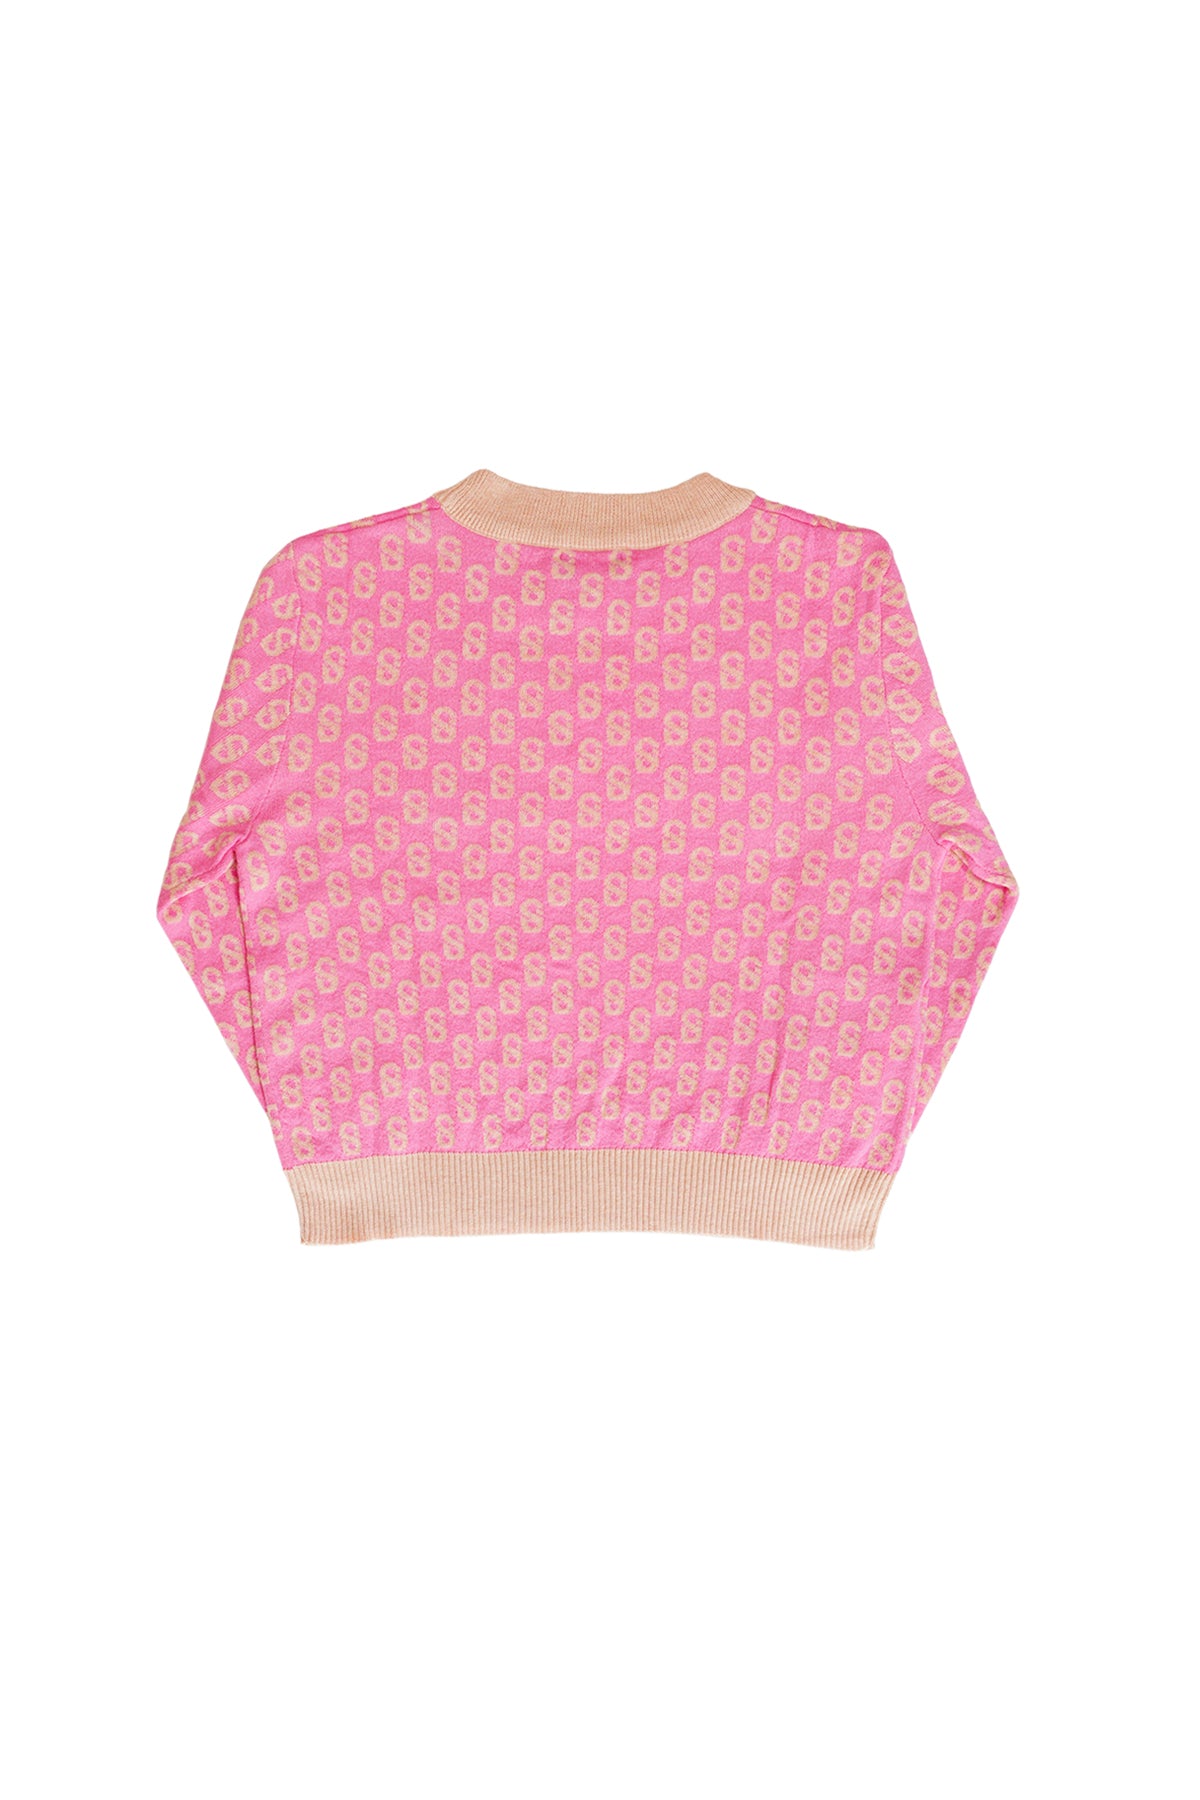 Everyday Kid's Monogram Sweater - Flamingo